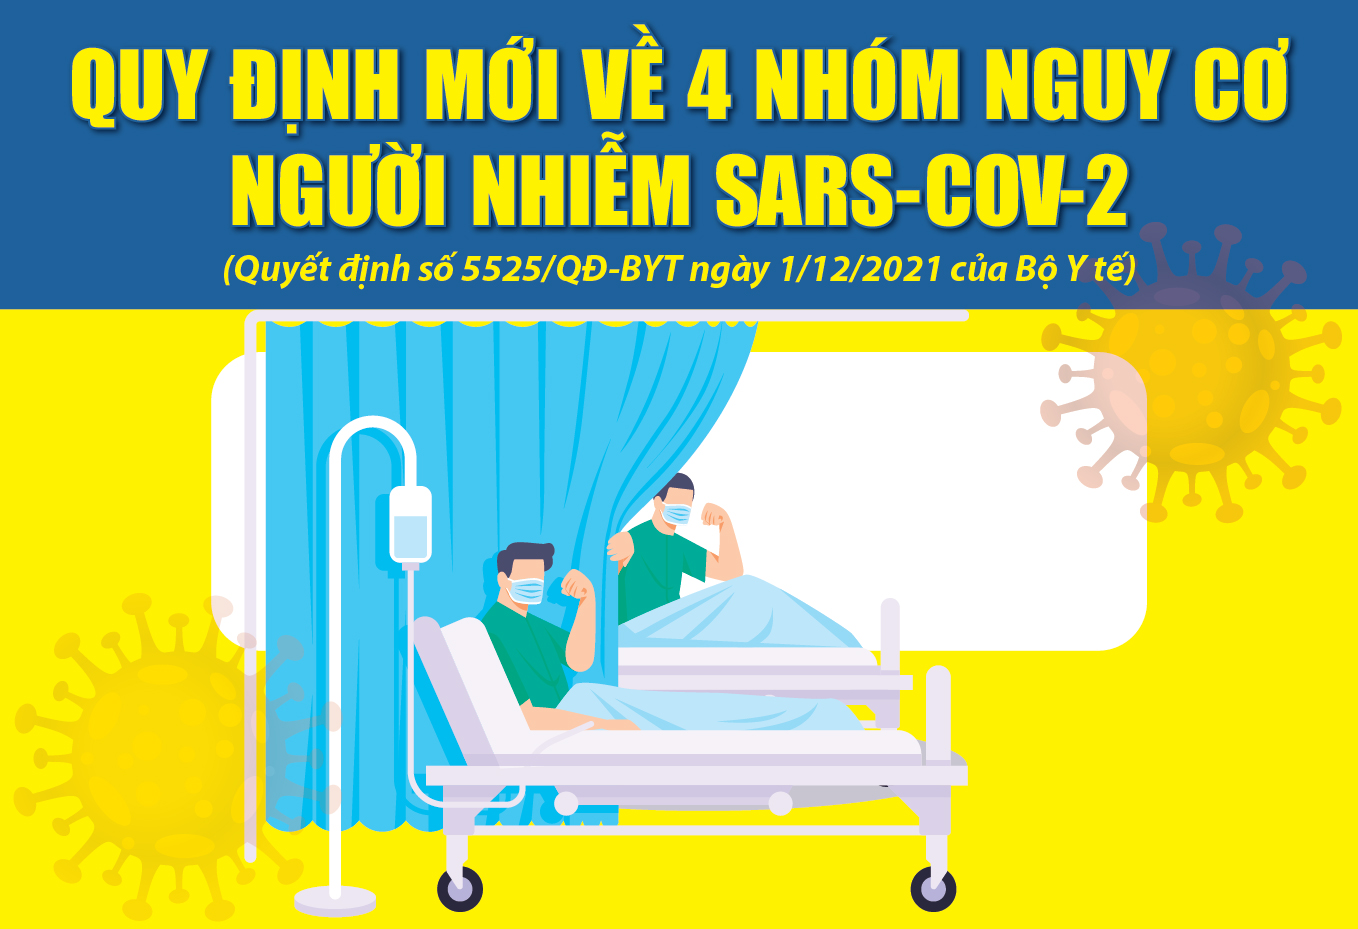 [Infographics] - Quy định mới về 4 nhóm nguy cơ người nhiễm SARS-CoV-2